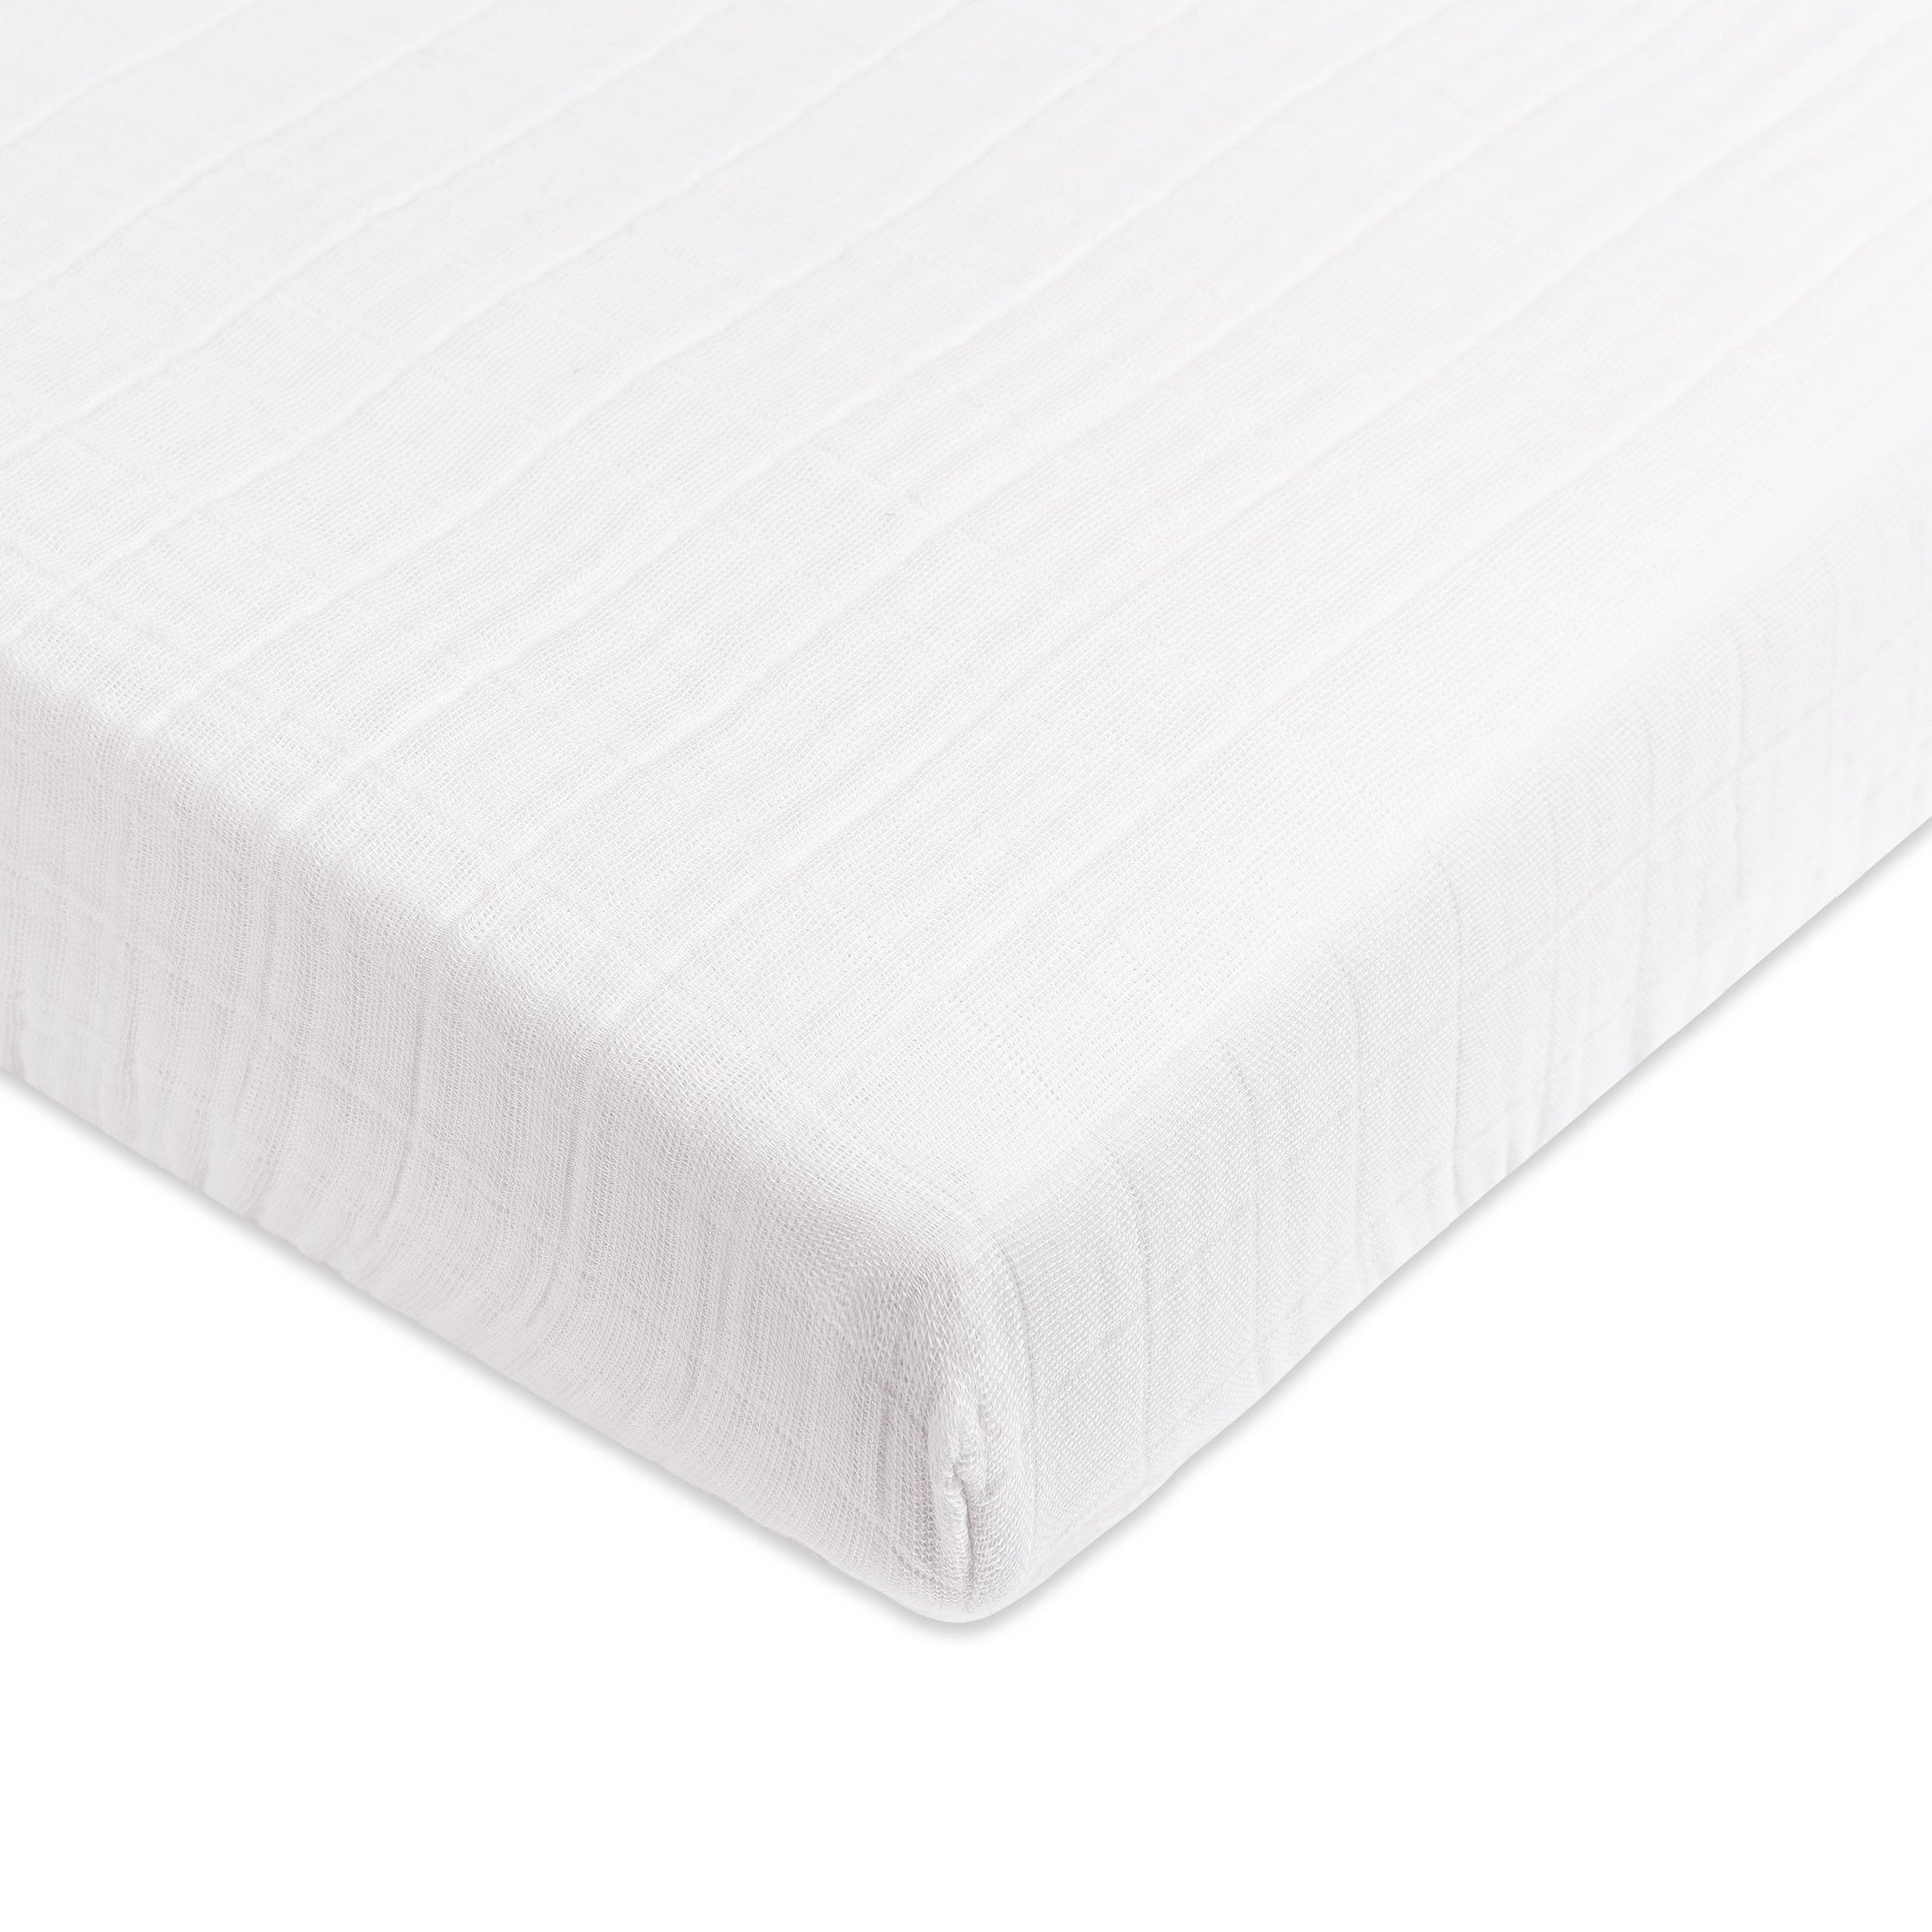 T29436,Plain White Muslin Mini Crib Sheet in GOTS Certified Organic Cotton